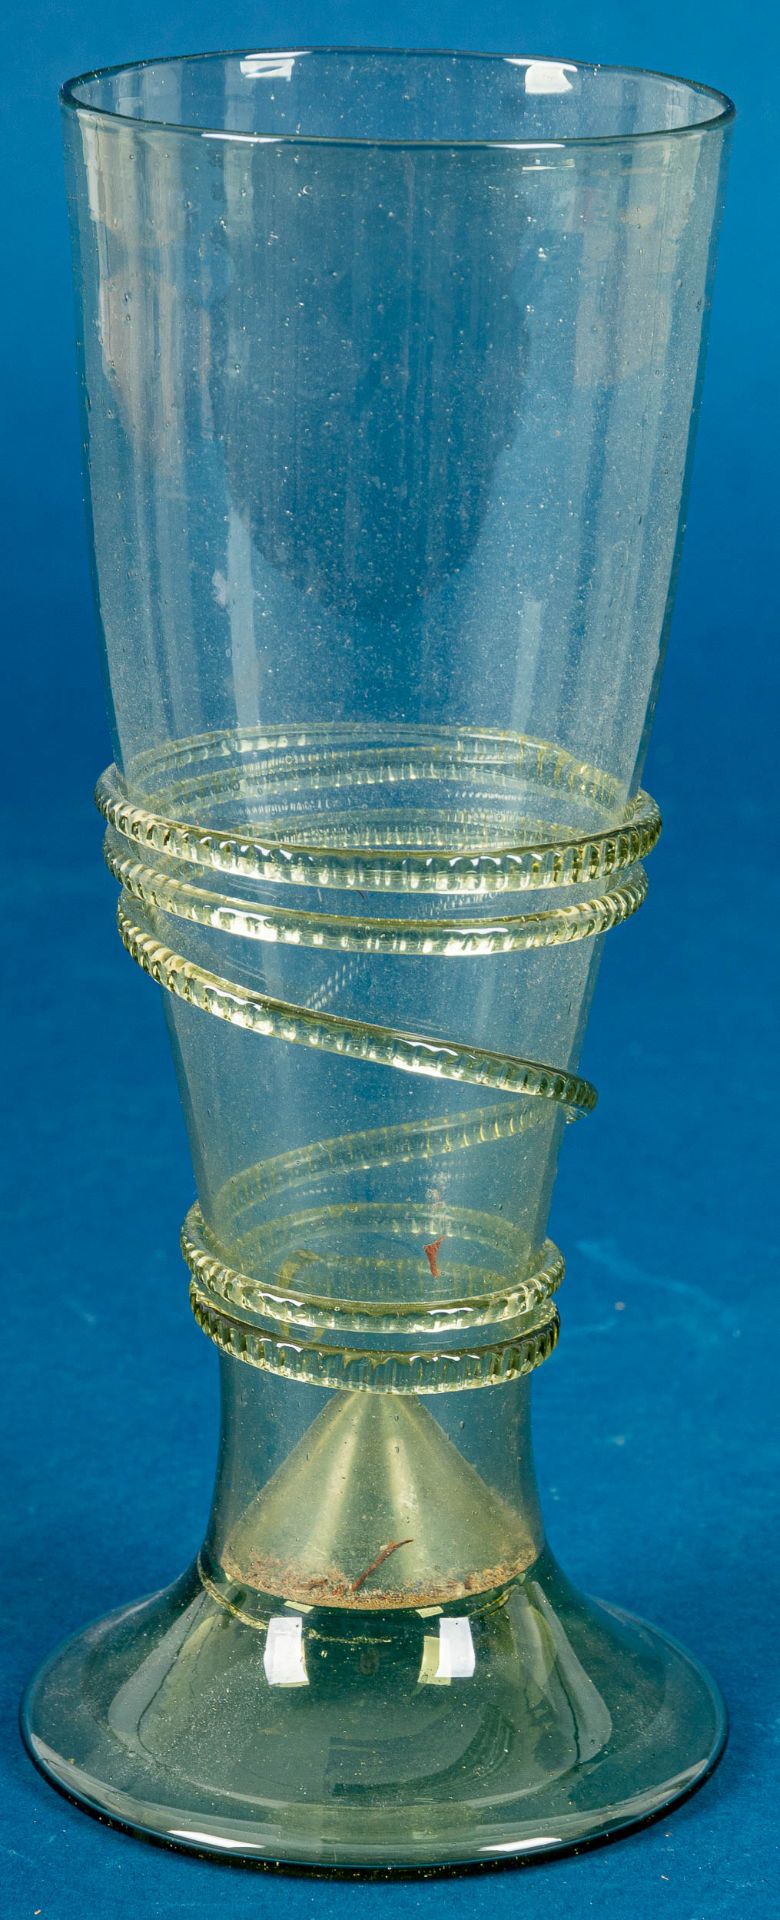 Großes antikes Trinkglas, grünliches Glas mit unzähligen Luftblaseneinschlüssen; mehrteilige Fertig